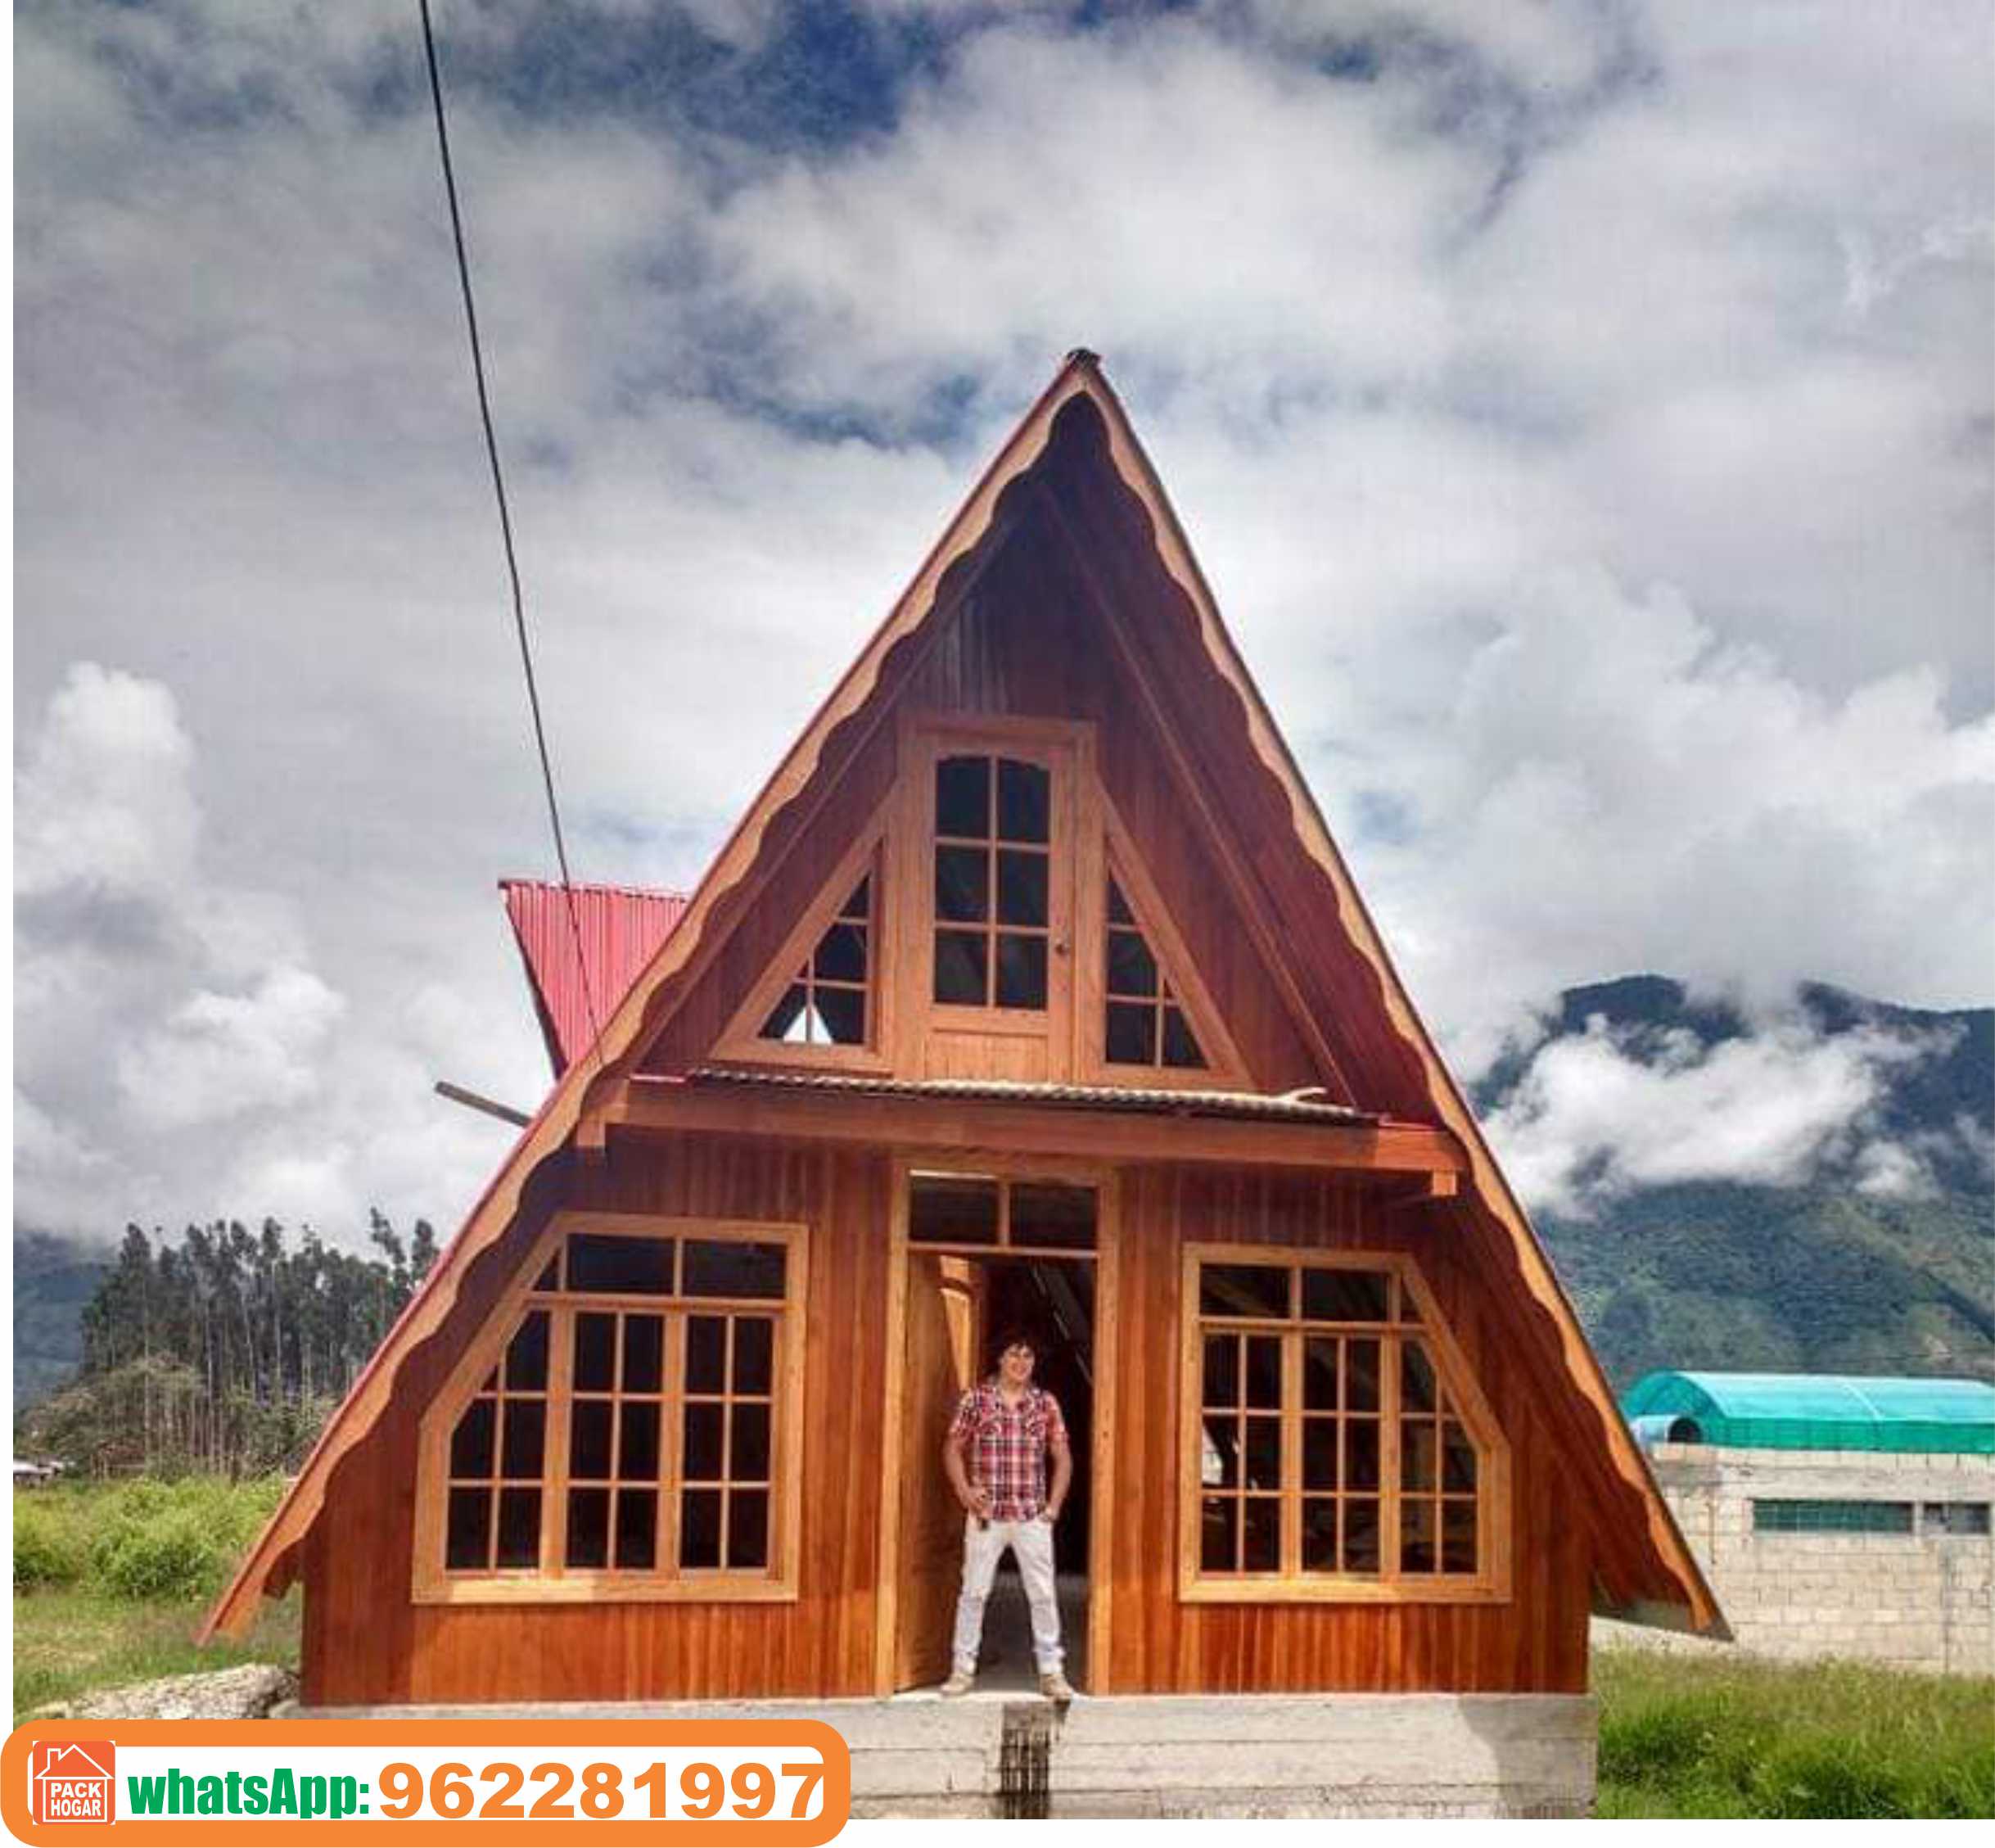 Casa cabaña de campo modelo alpina/piramidal construida con madera Perú - 2022